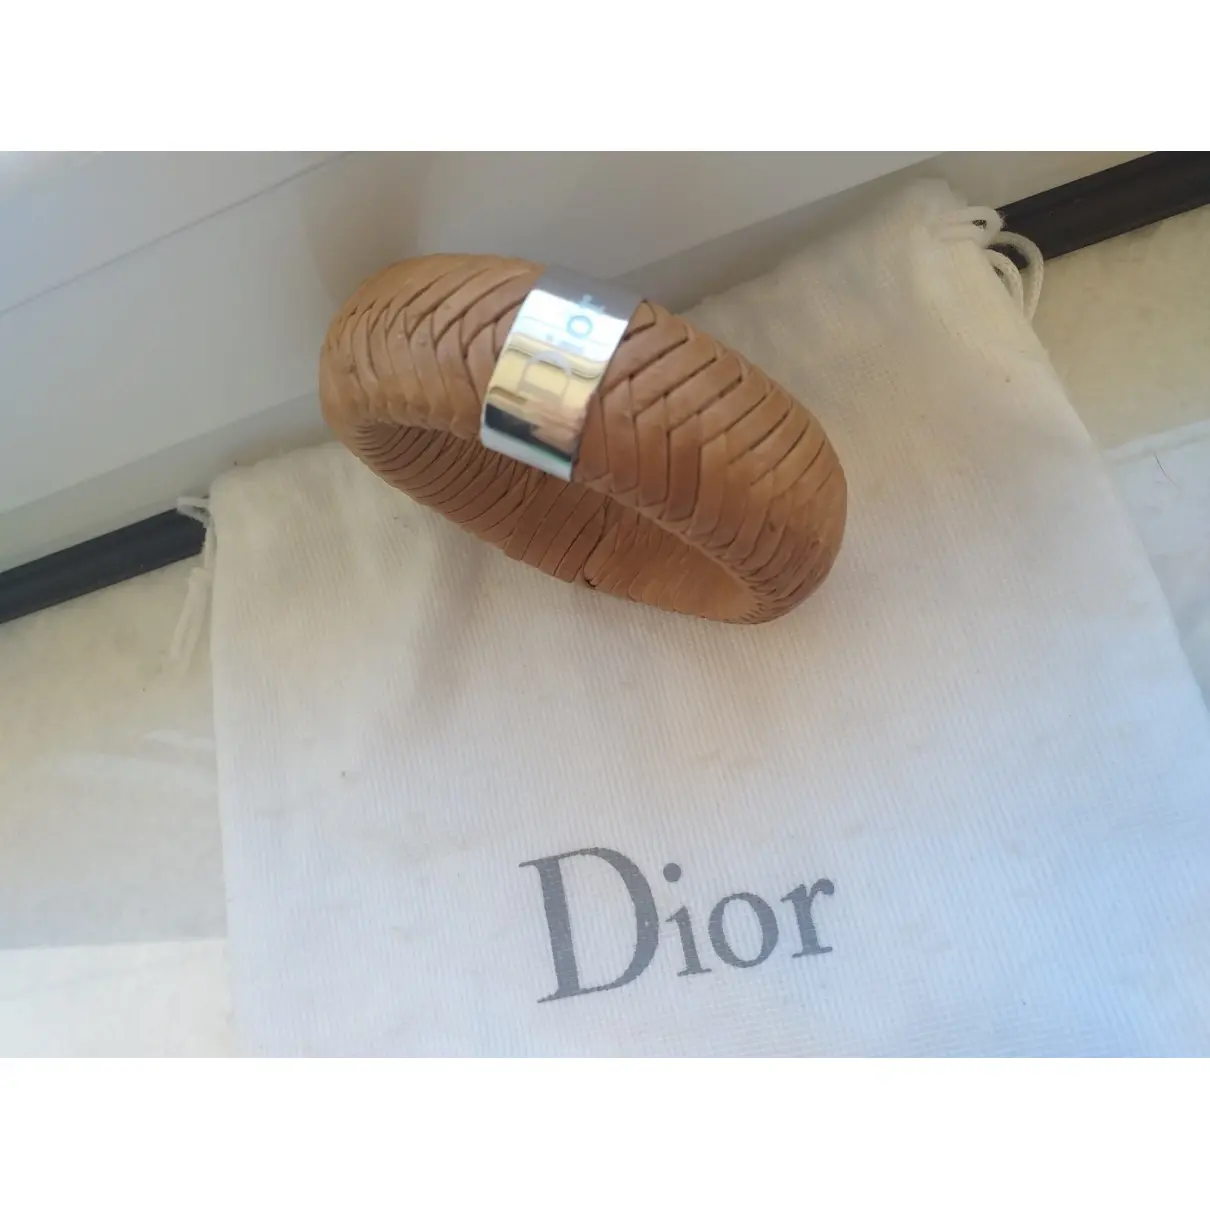 Buy Dior Leather bracelet online